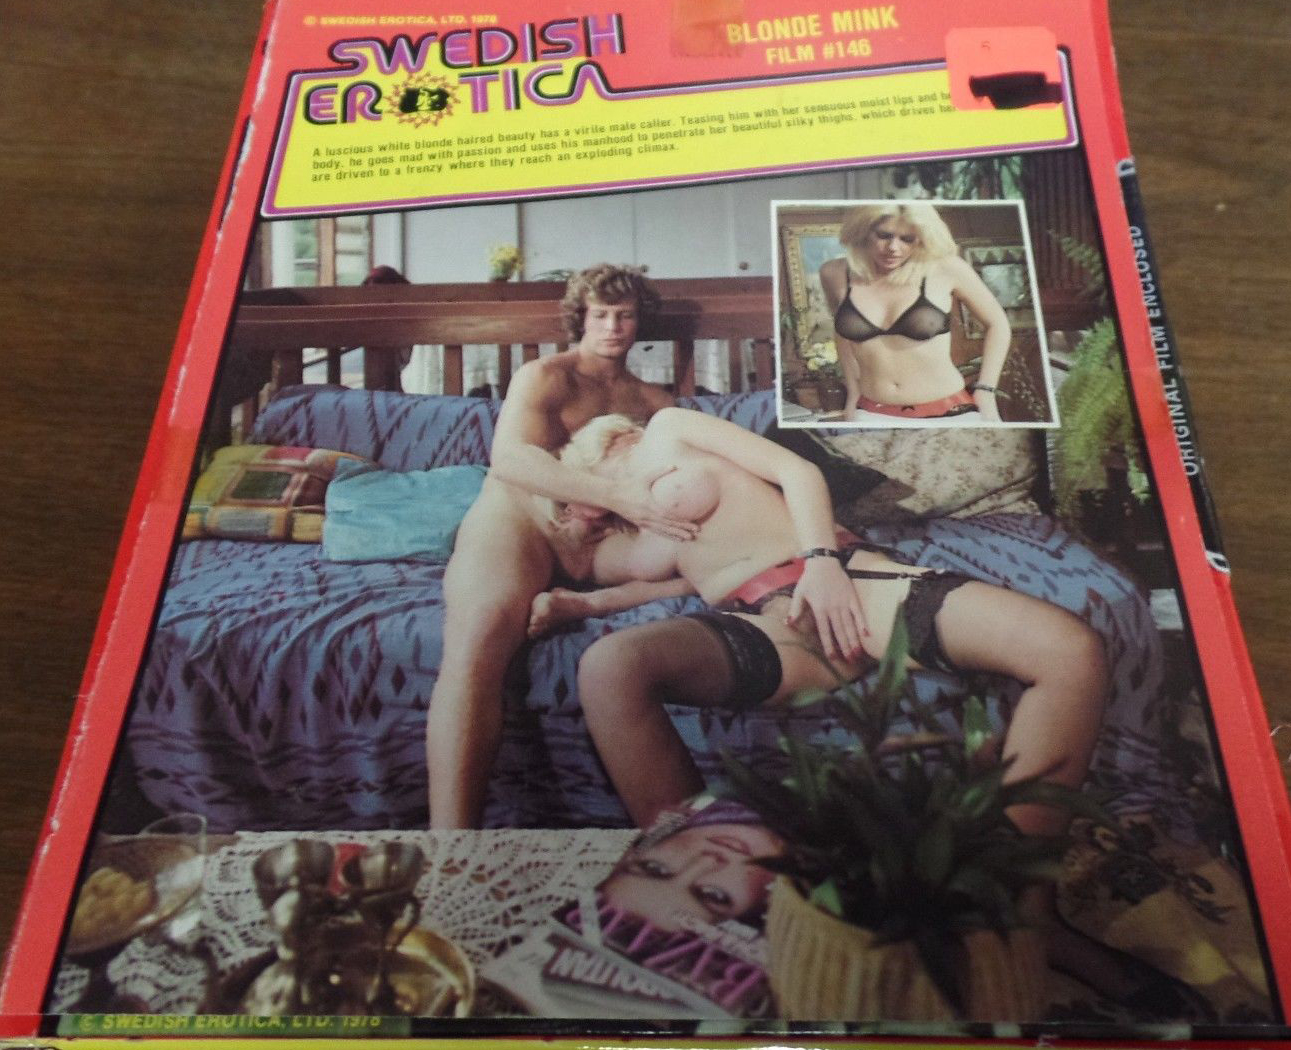 Swedish Erotica # 146 magazine back issue Swedish Erotica magizine back copy 